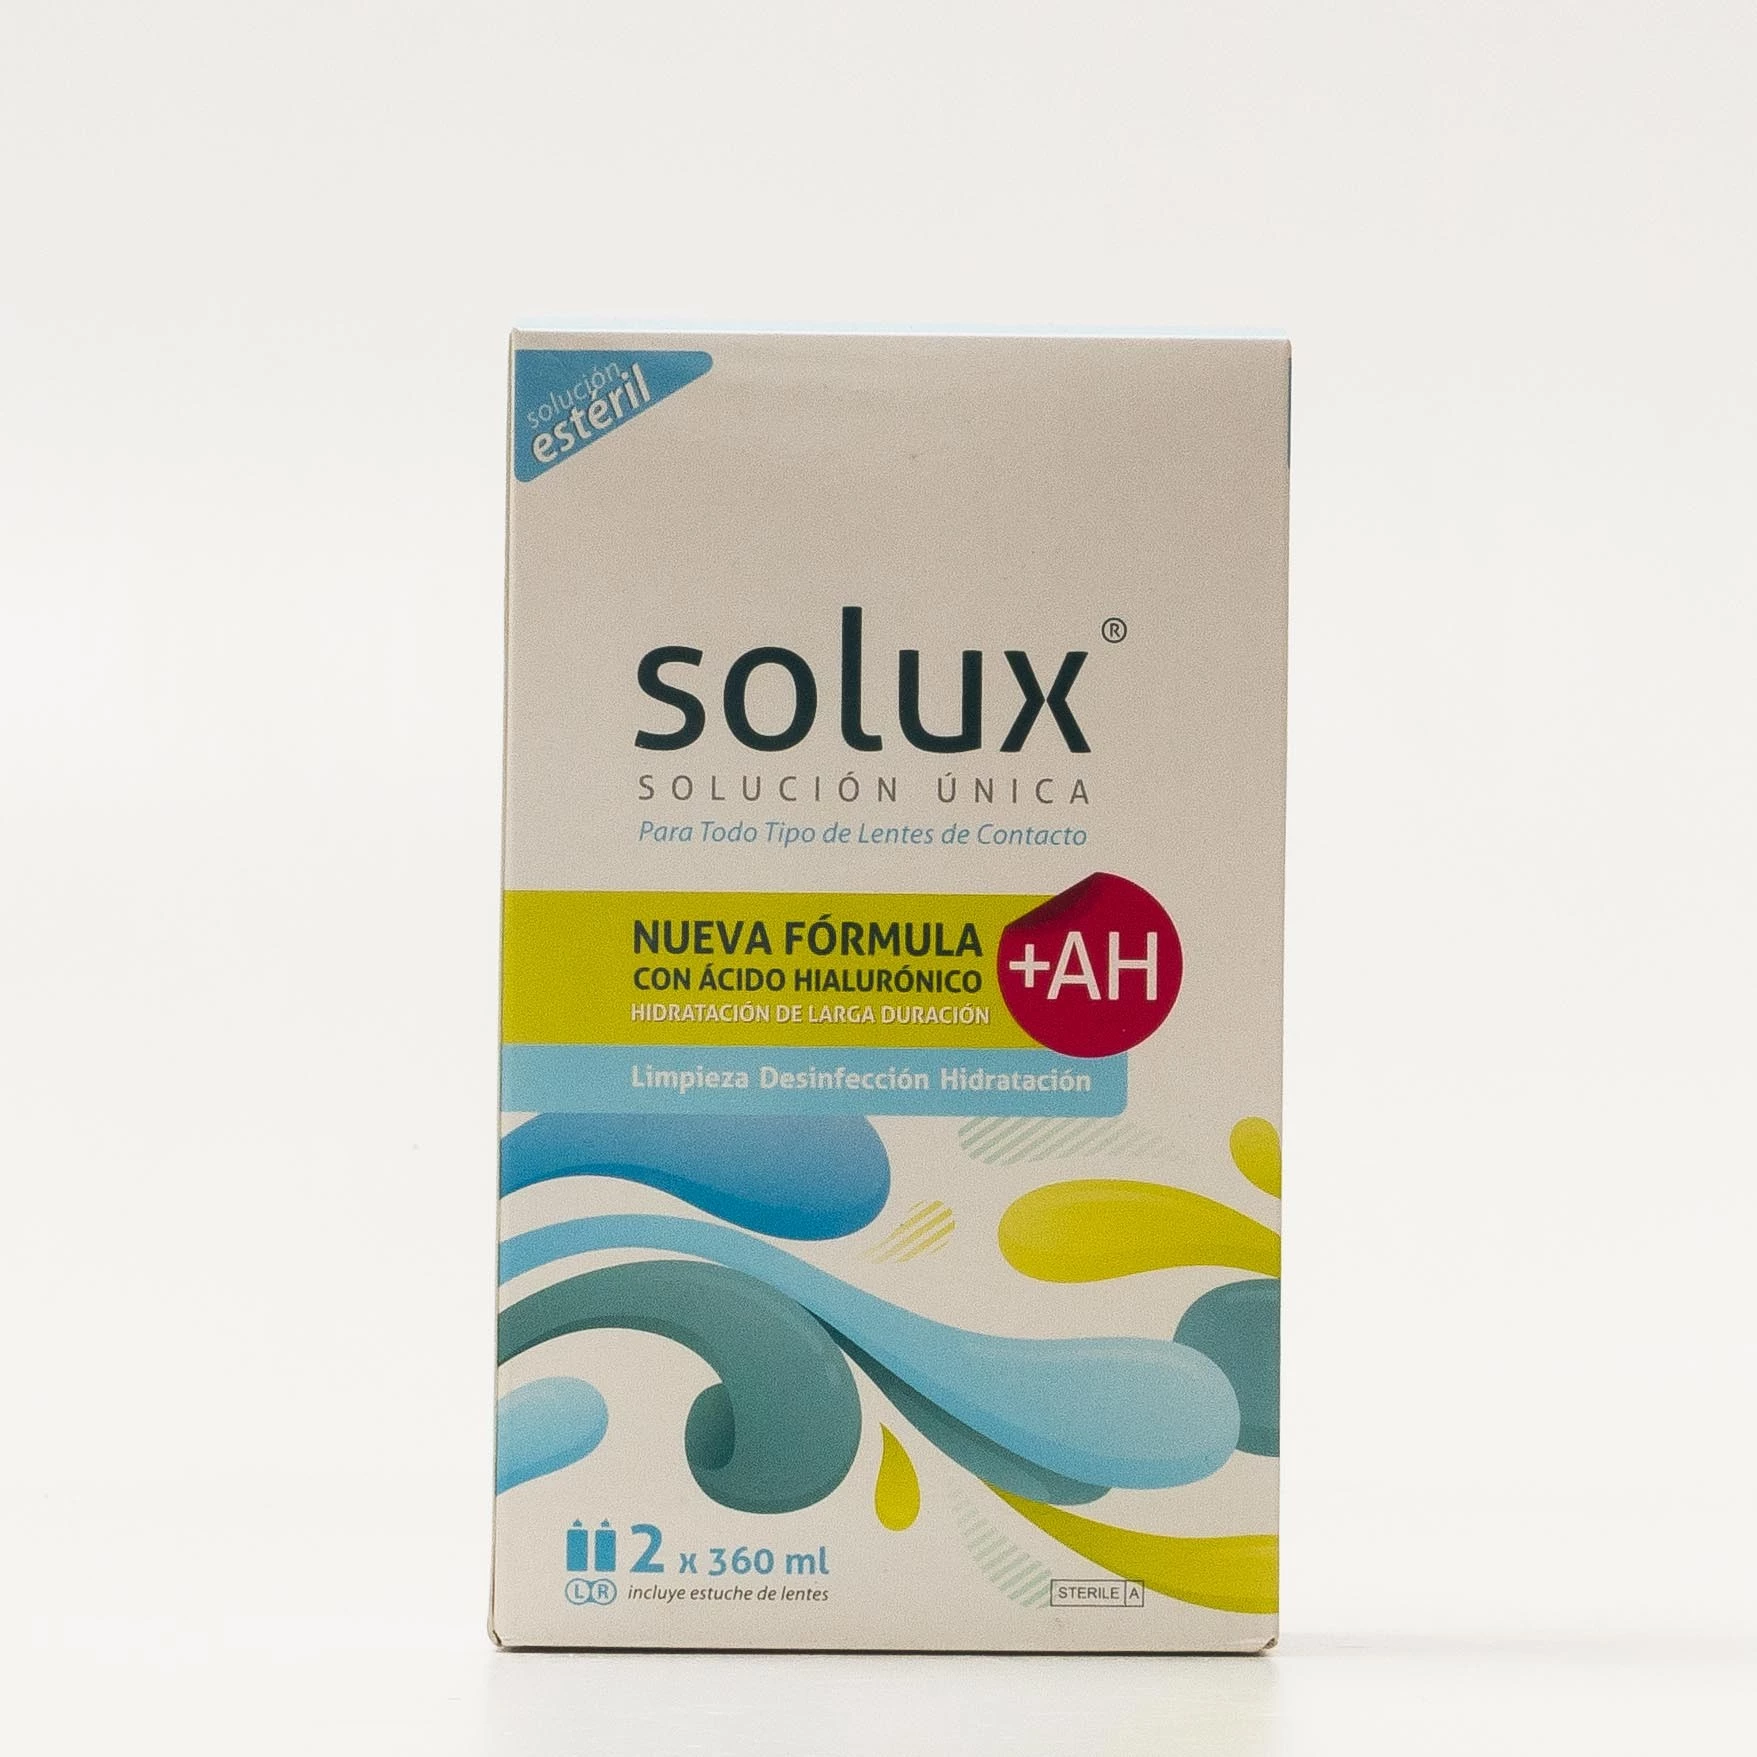 Solux Solución Única Lentes de Contacto, 2x360ml.